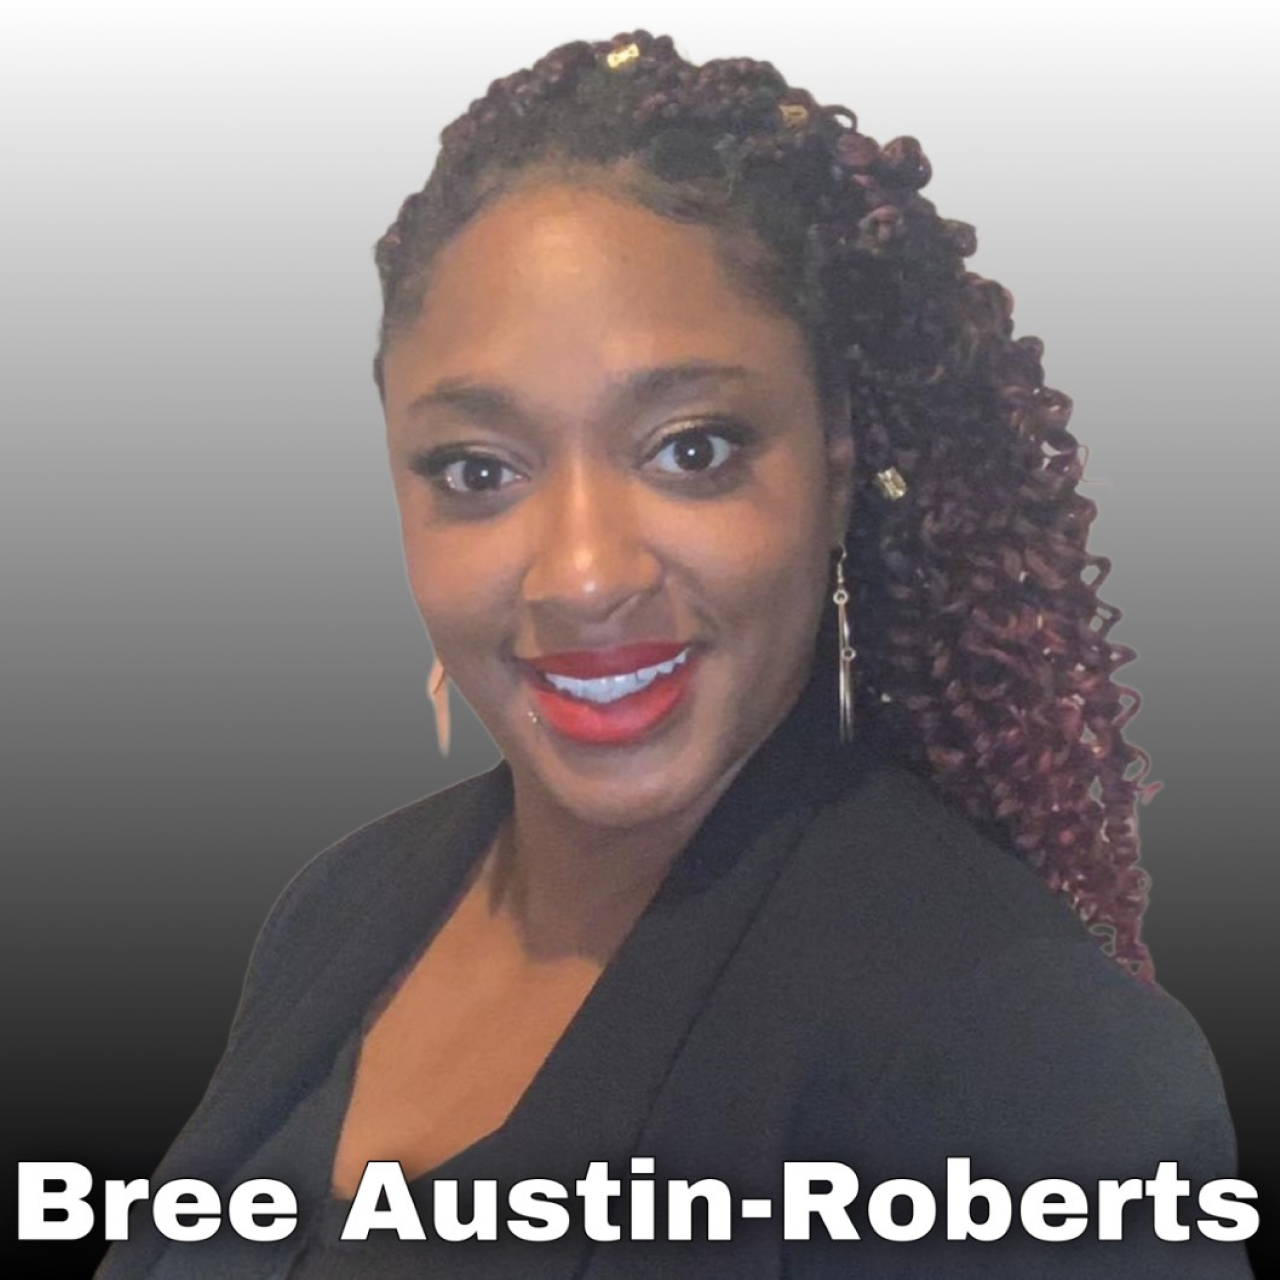 Bree Austin-Roberts